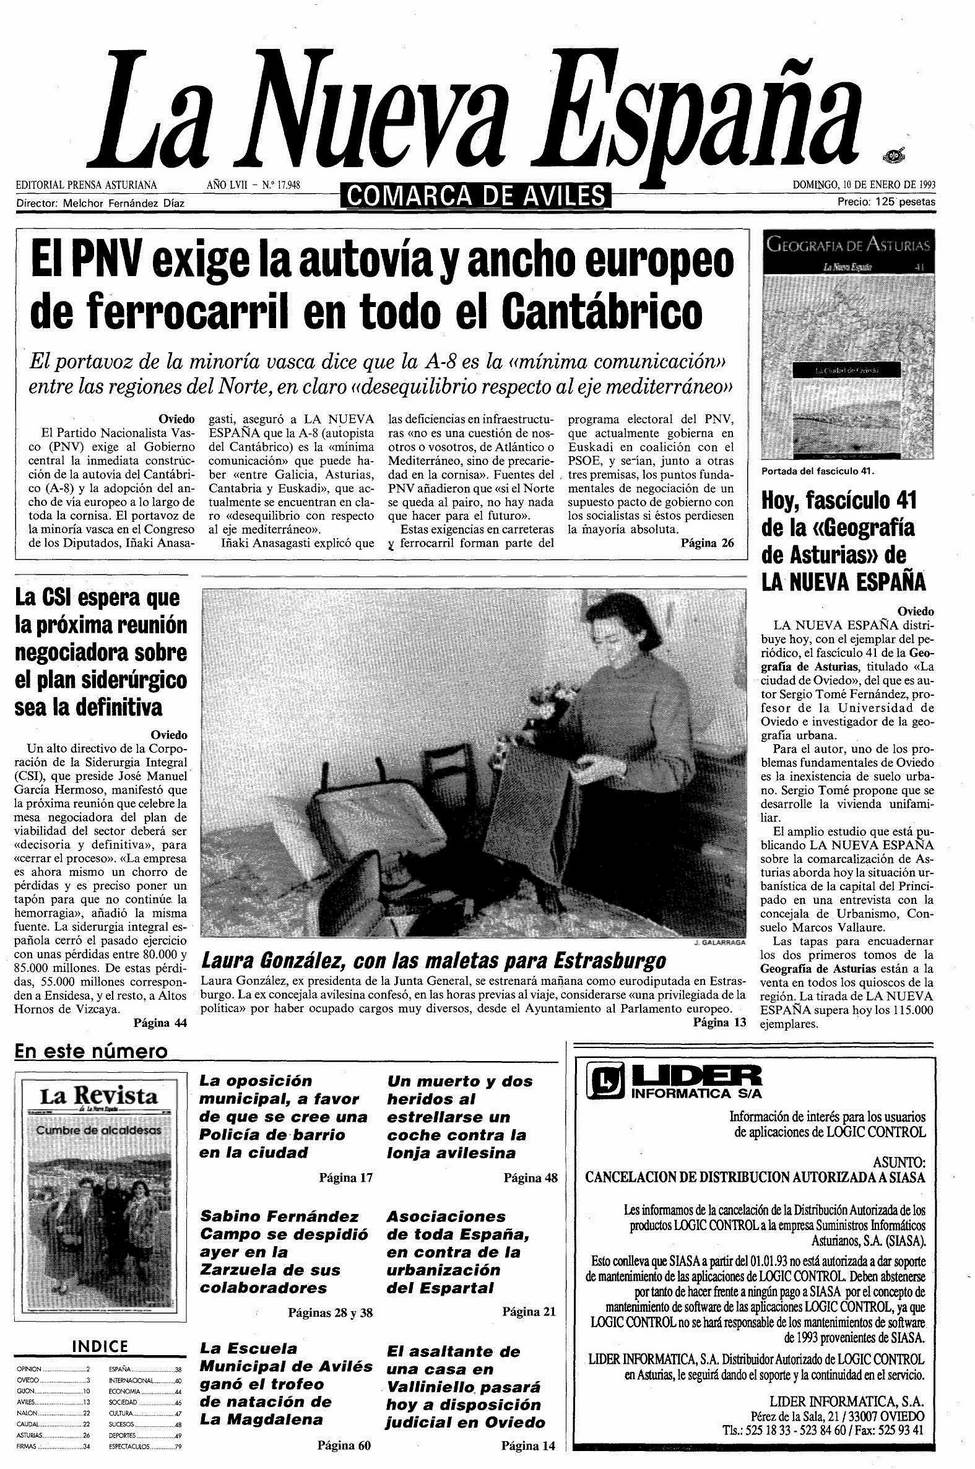 Portada del Domingo, 10 de Enero de 1993